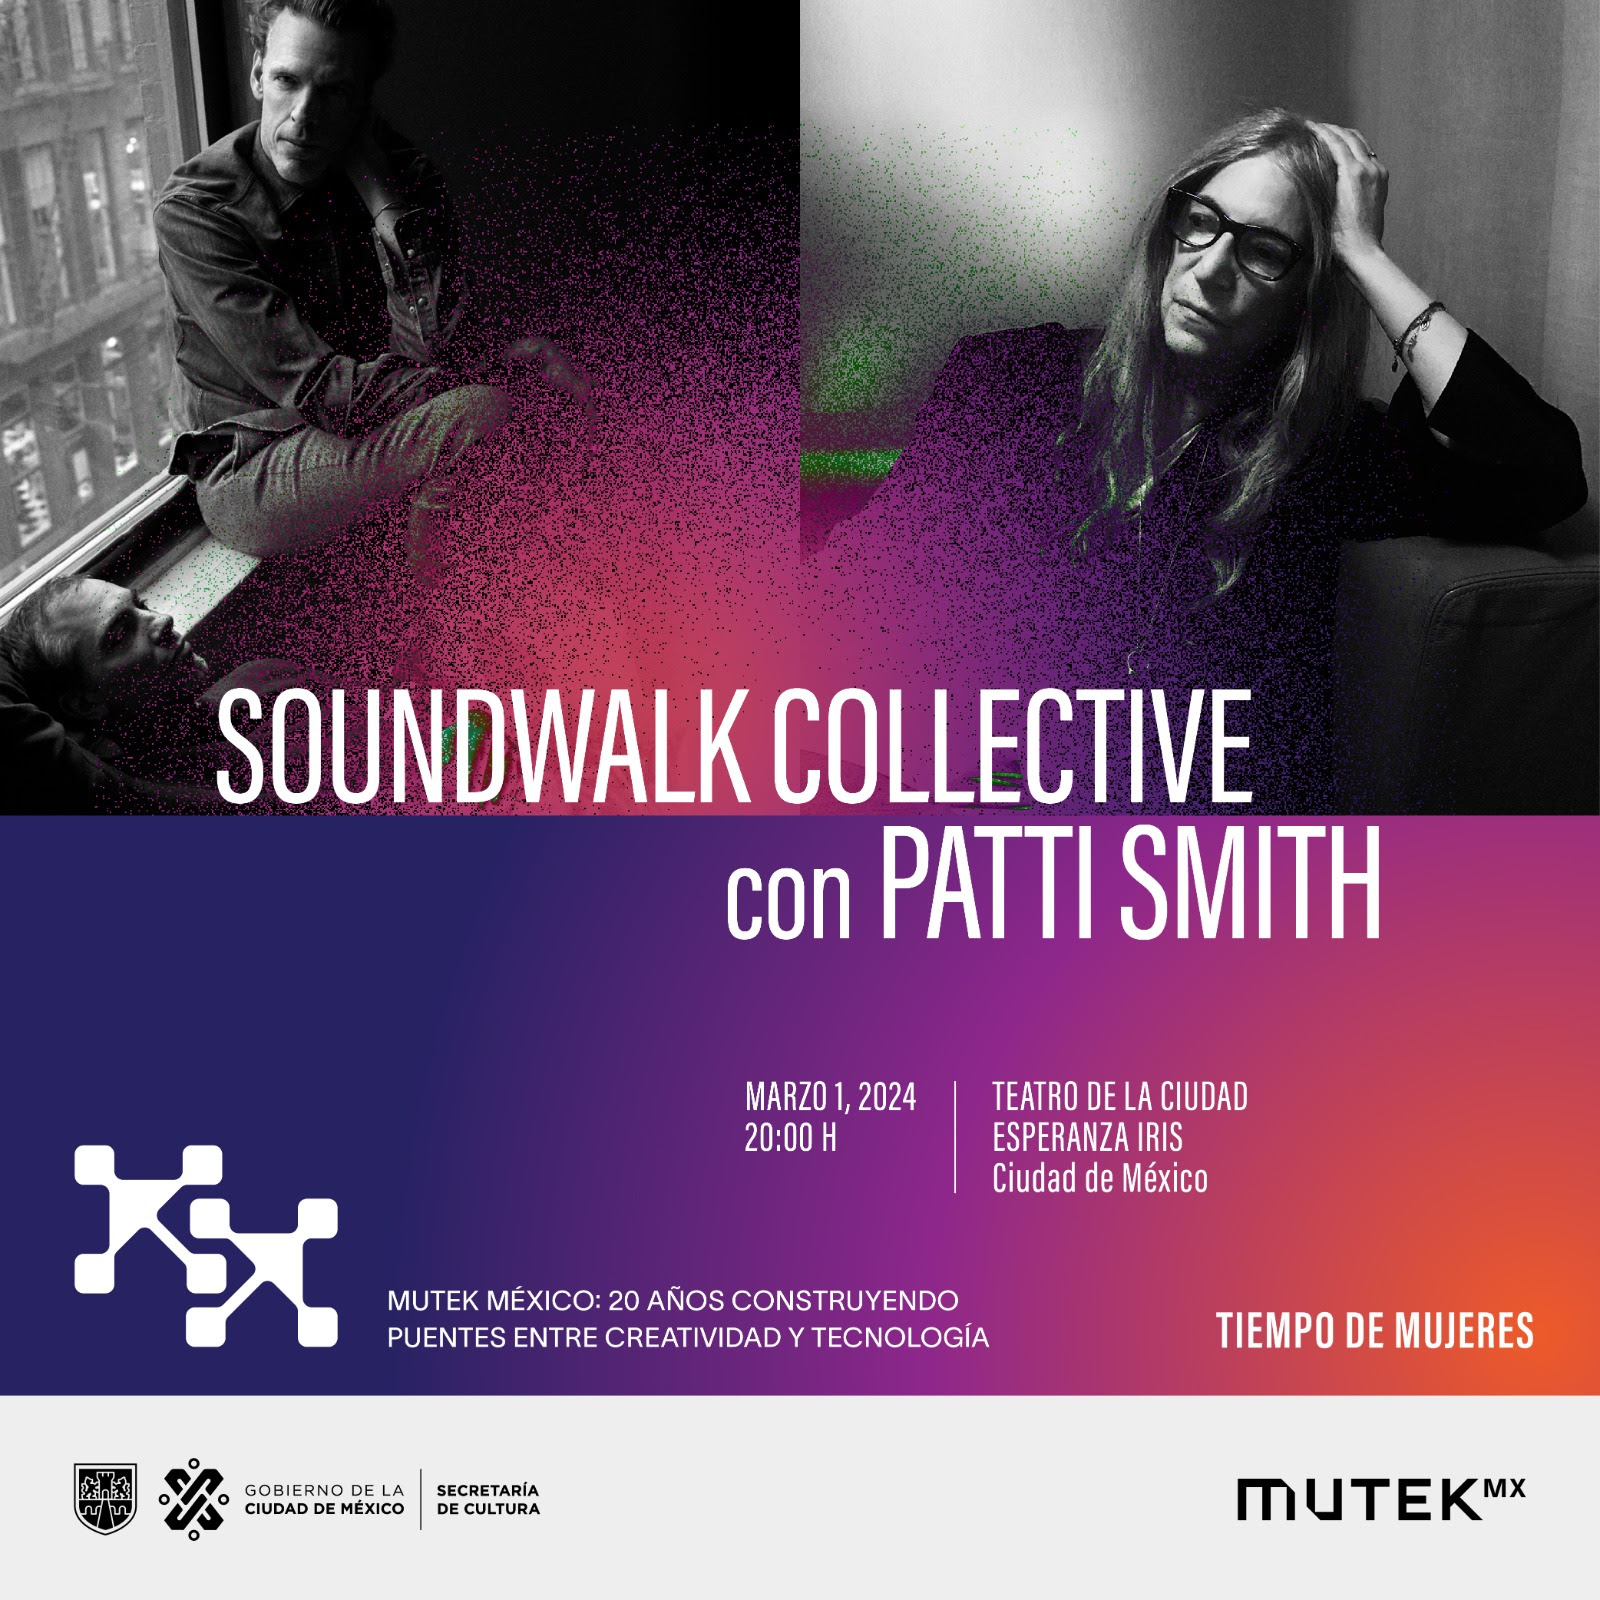 Tiempo de Mujeres y MUTEK México unen fuerzas para presentar “Correspondences” de Patti Smith y Soundwalk Collective